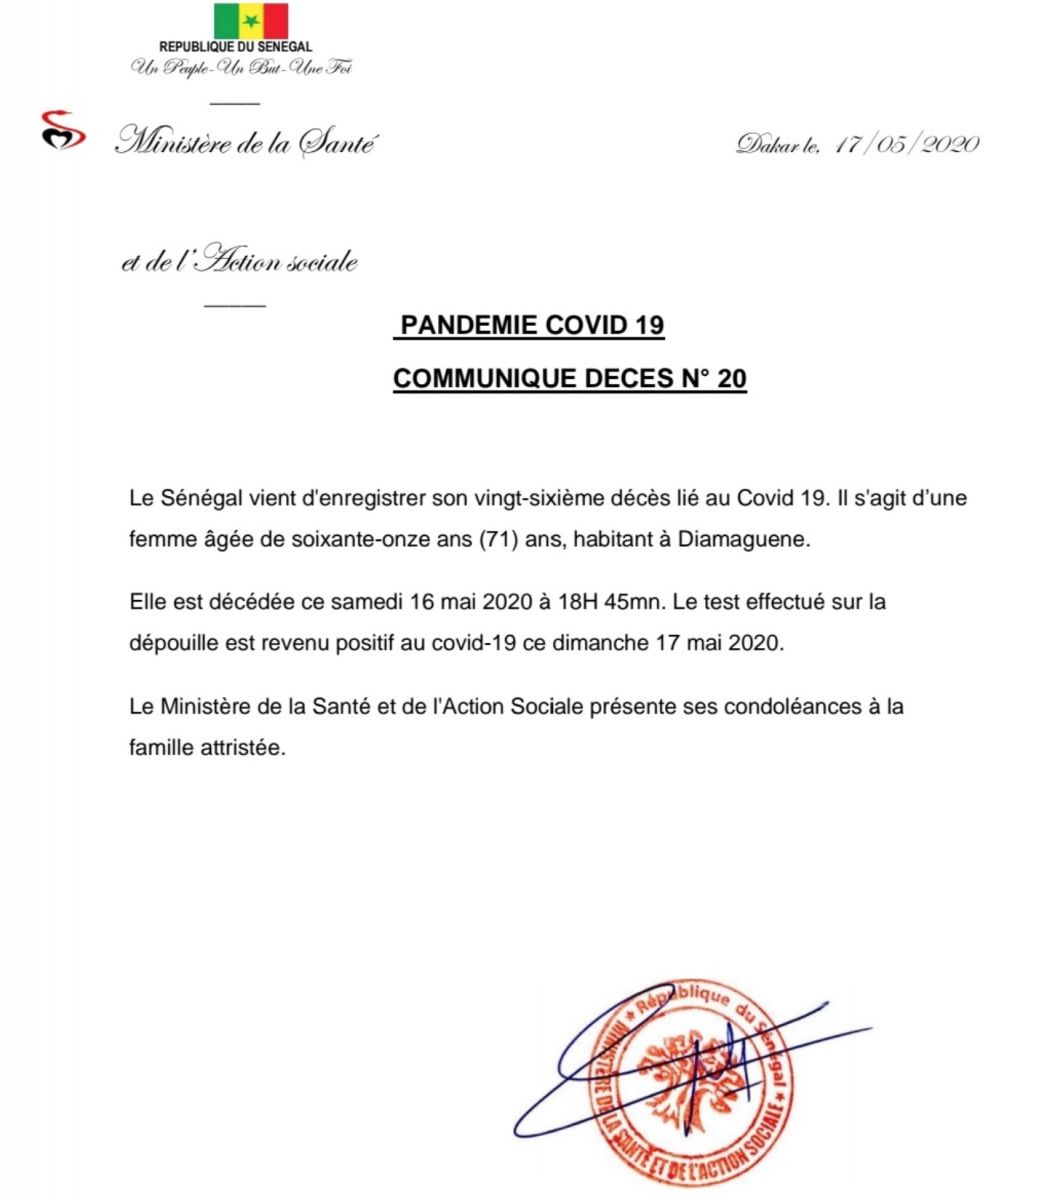 doc coronavirus deces 17 43 2020 08 43 04 - Covid-19 : Le Sénégal vient d'enregistrer un 26e décès